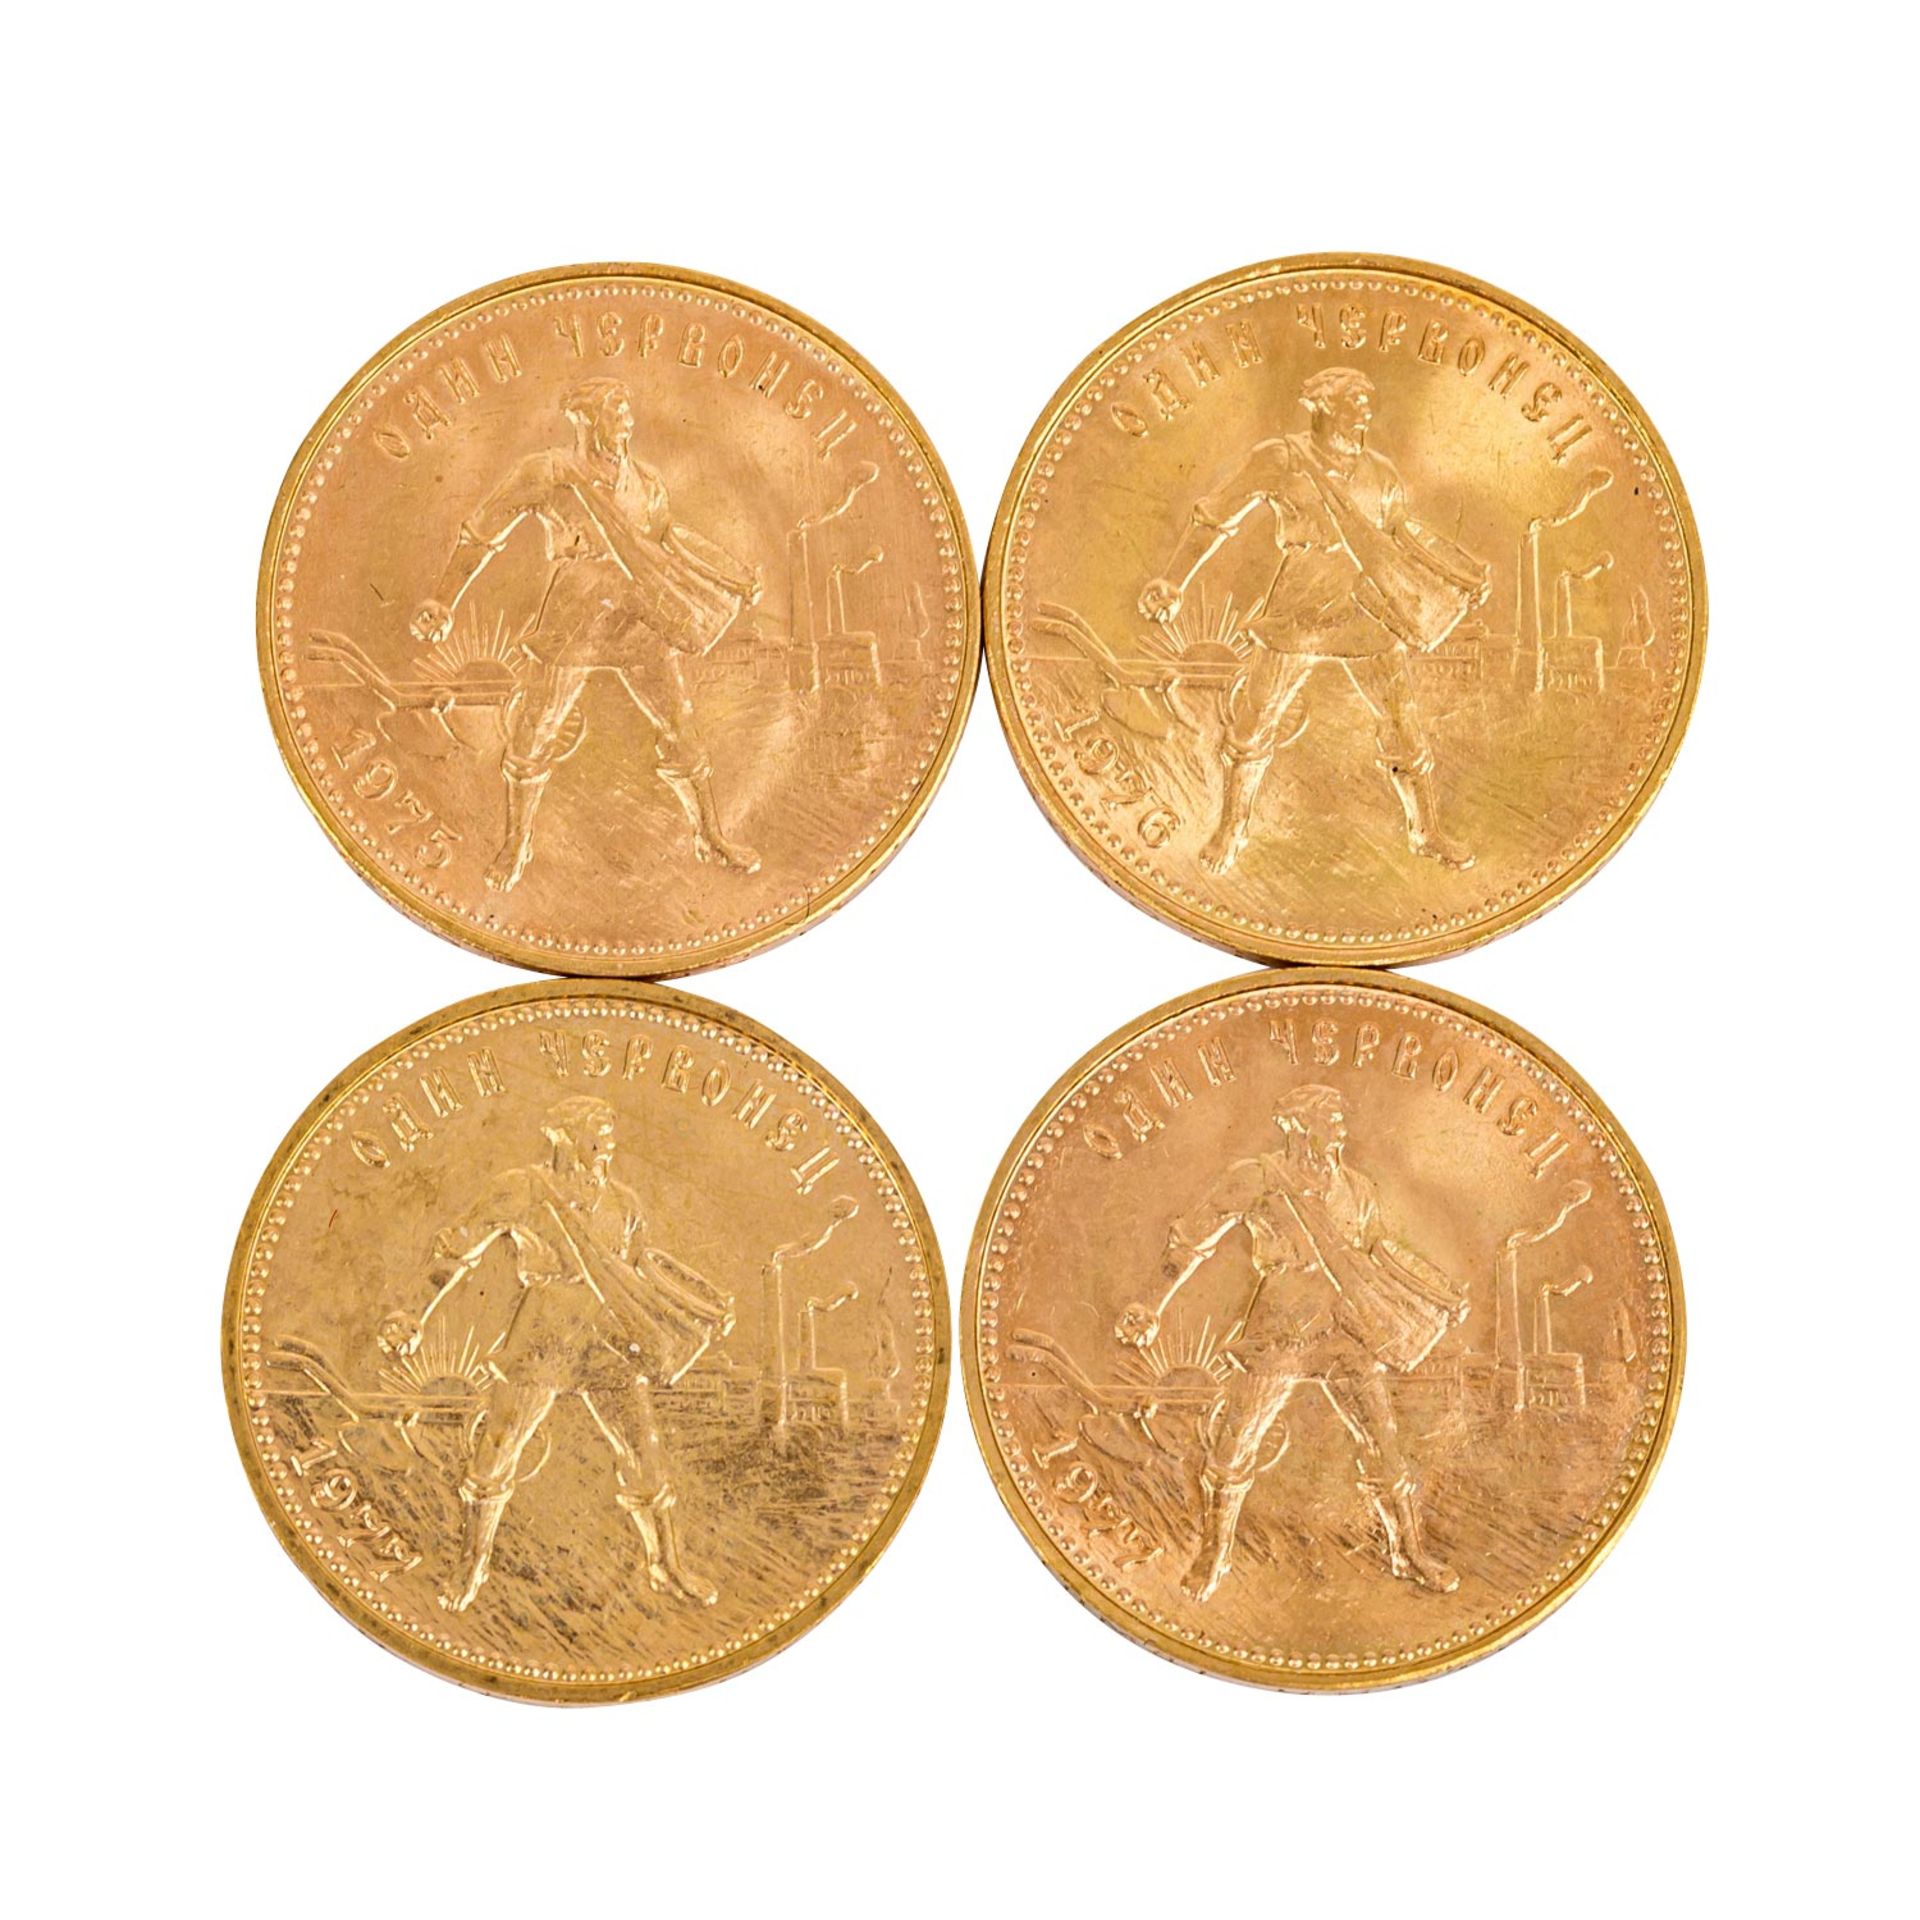 Russland/GOLD - 4 x 10 Rubel Tscherwonez 1975, 1976, 1977 (2x). Je 7,74 g fein, ss-vz Russia/GOLD -